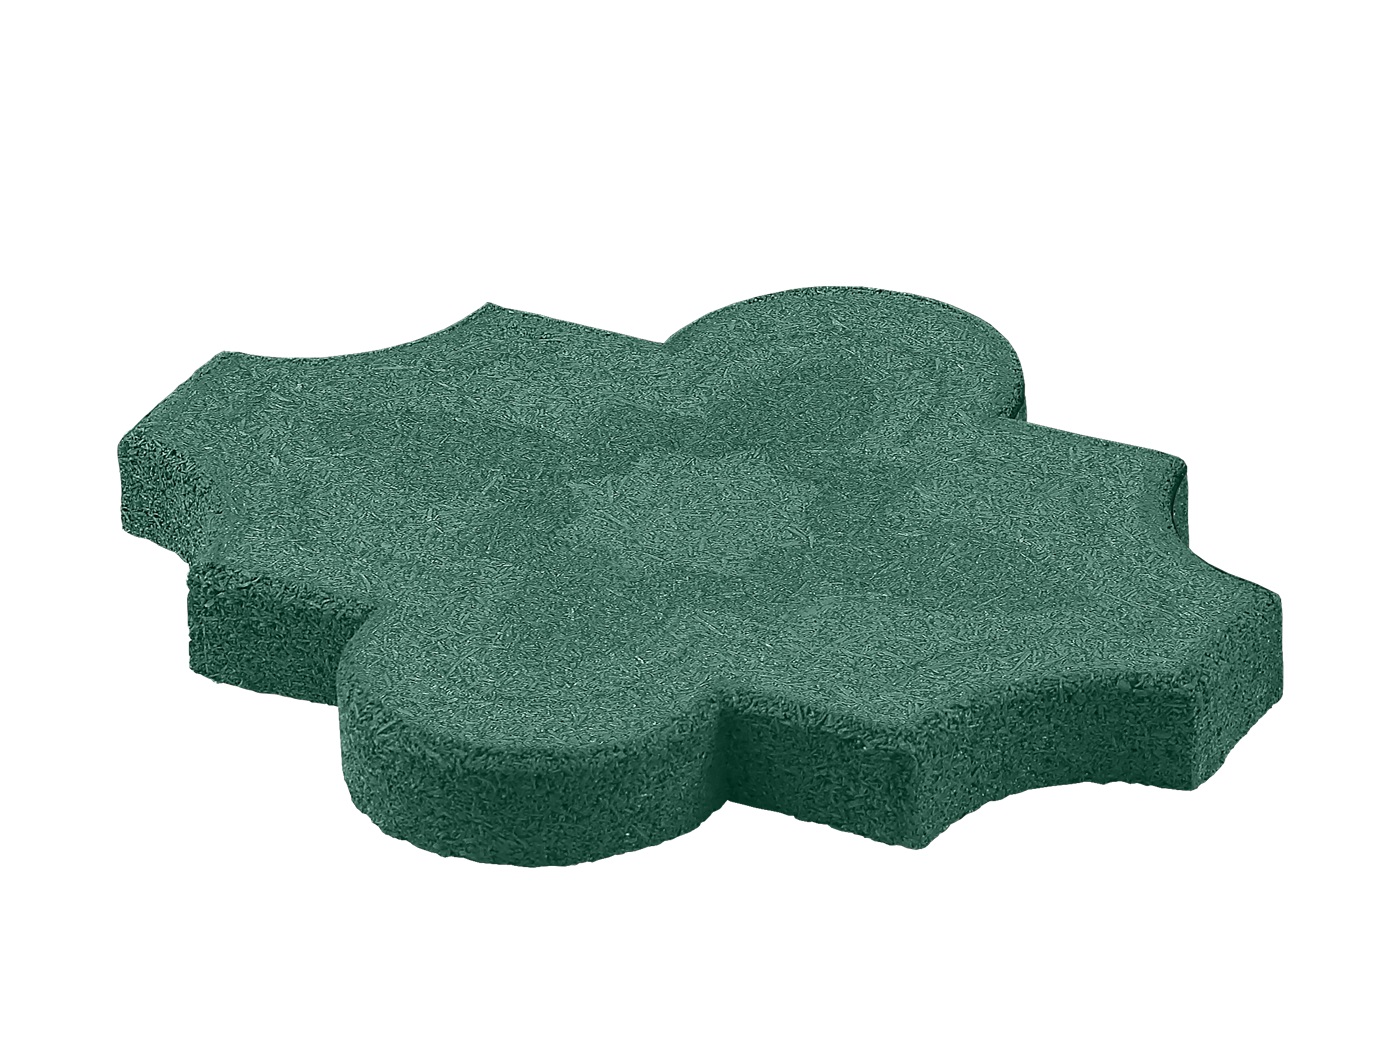 Резиновая плитка «Клевер» 260x220x25мм, зелёная